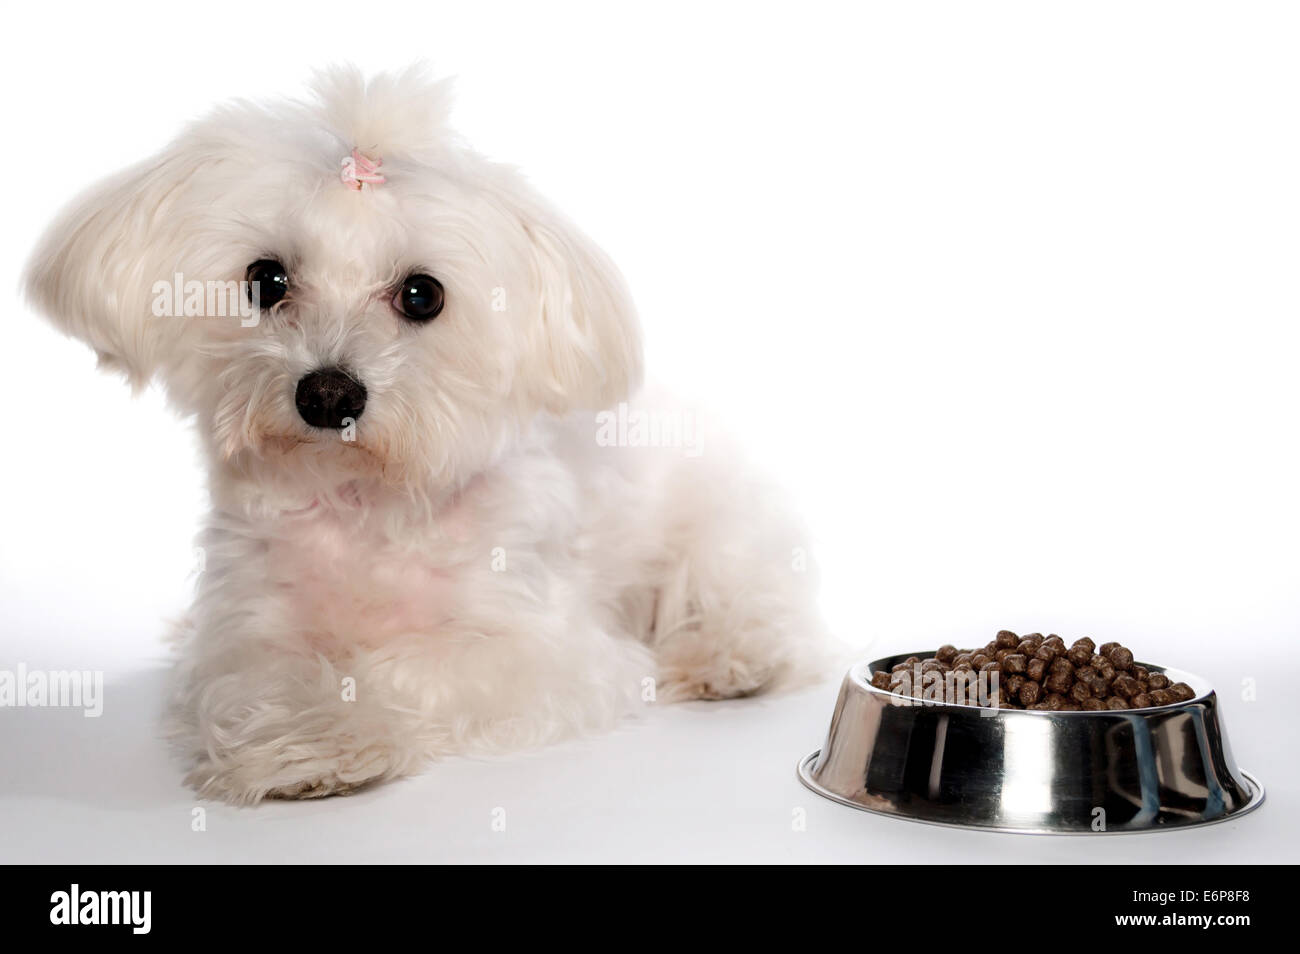 Maltese dog with ponytail on white background Stock Photo